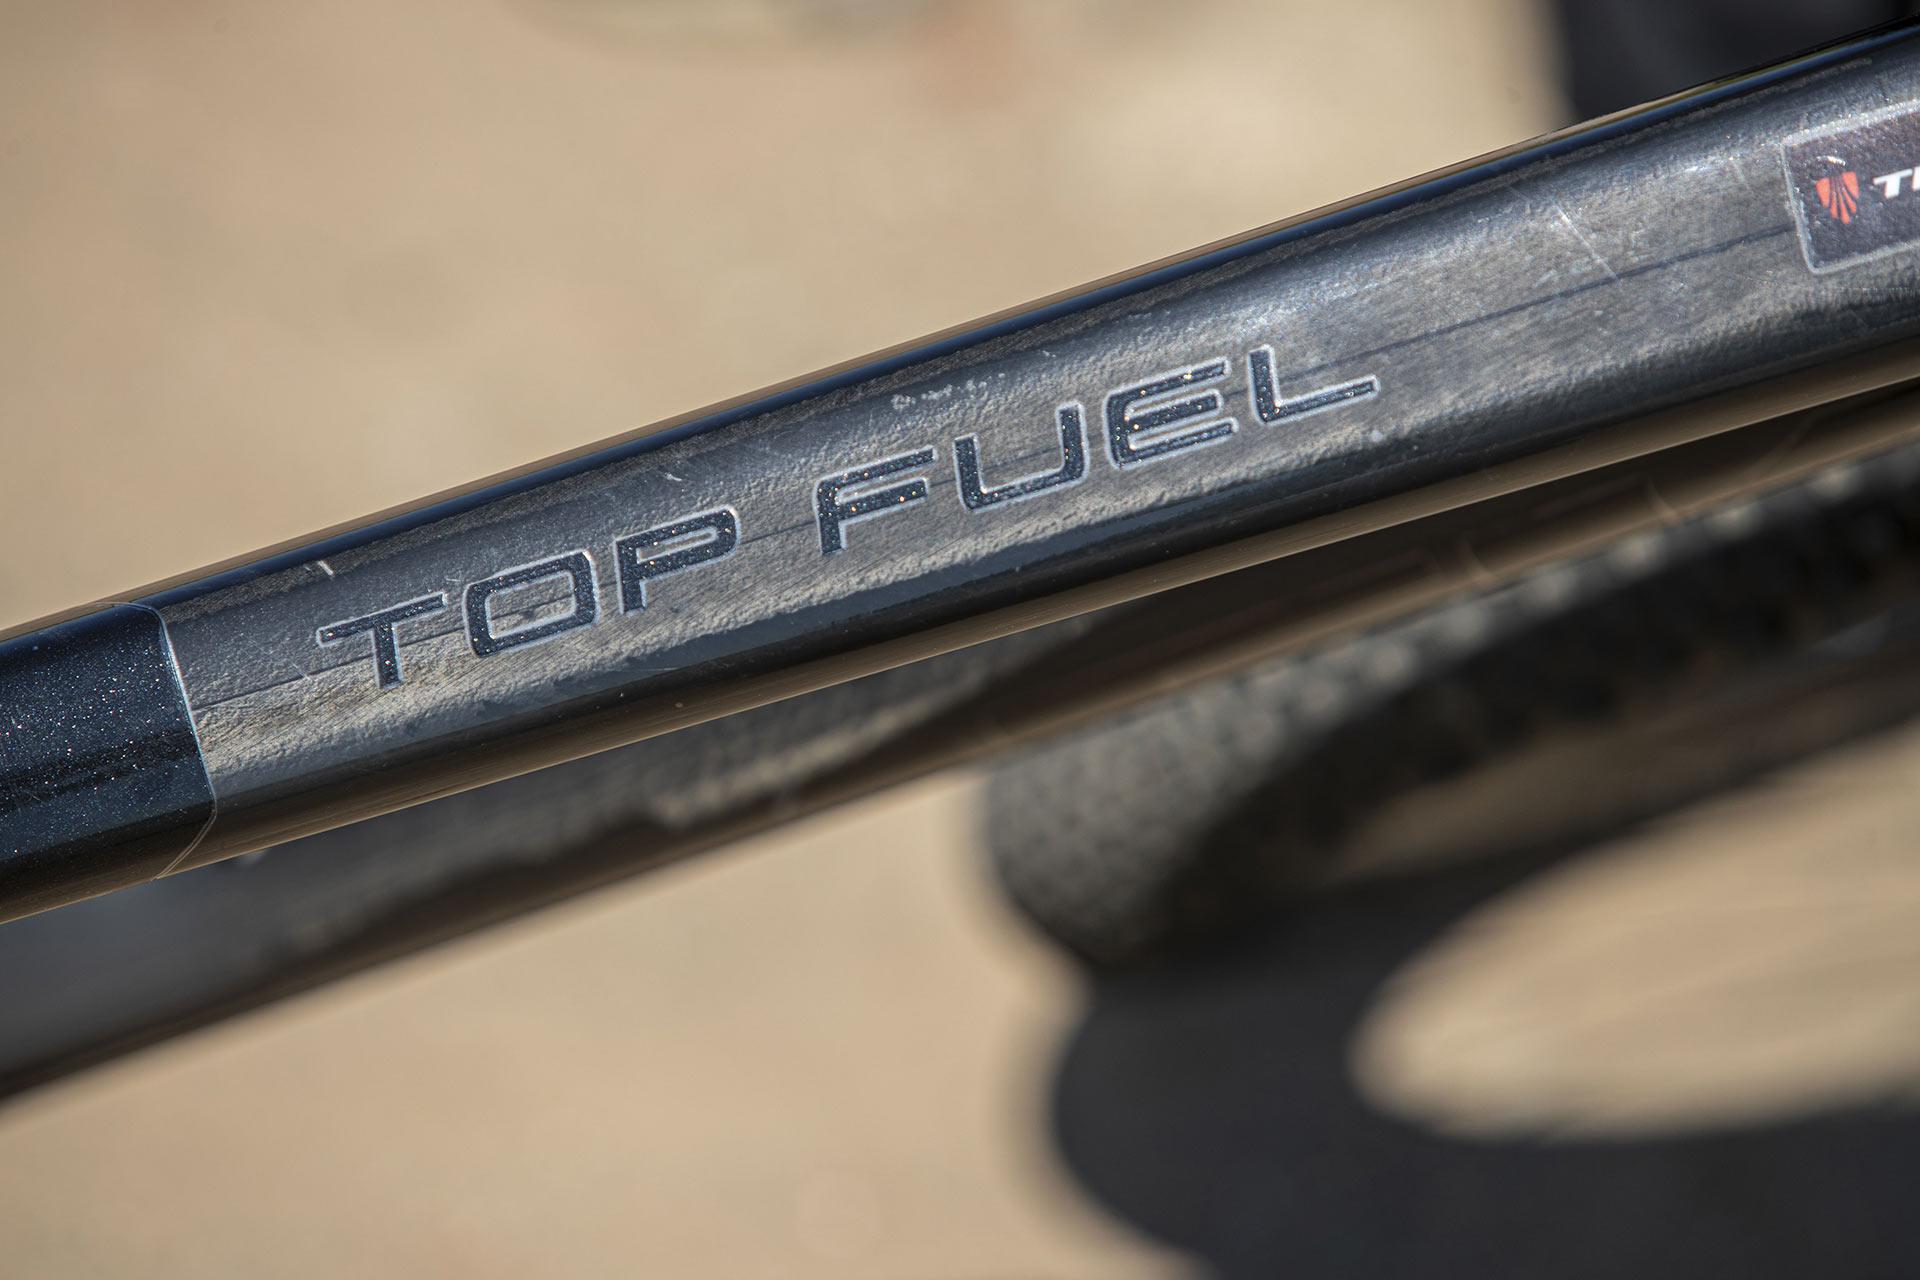 Trek Top Fuel 9.8